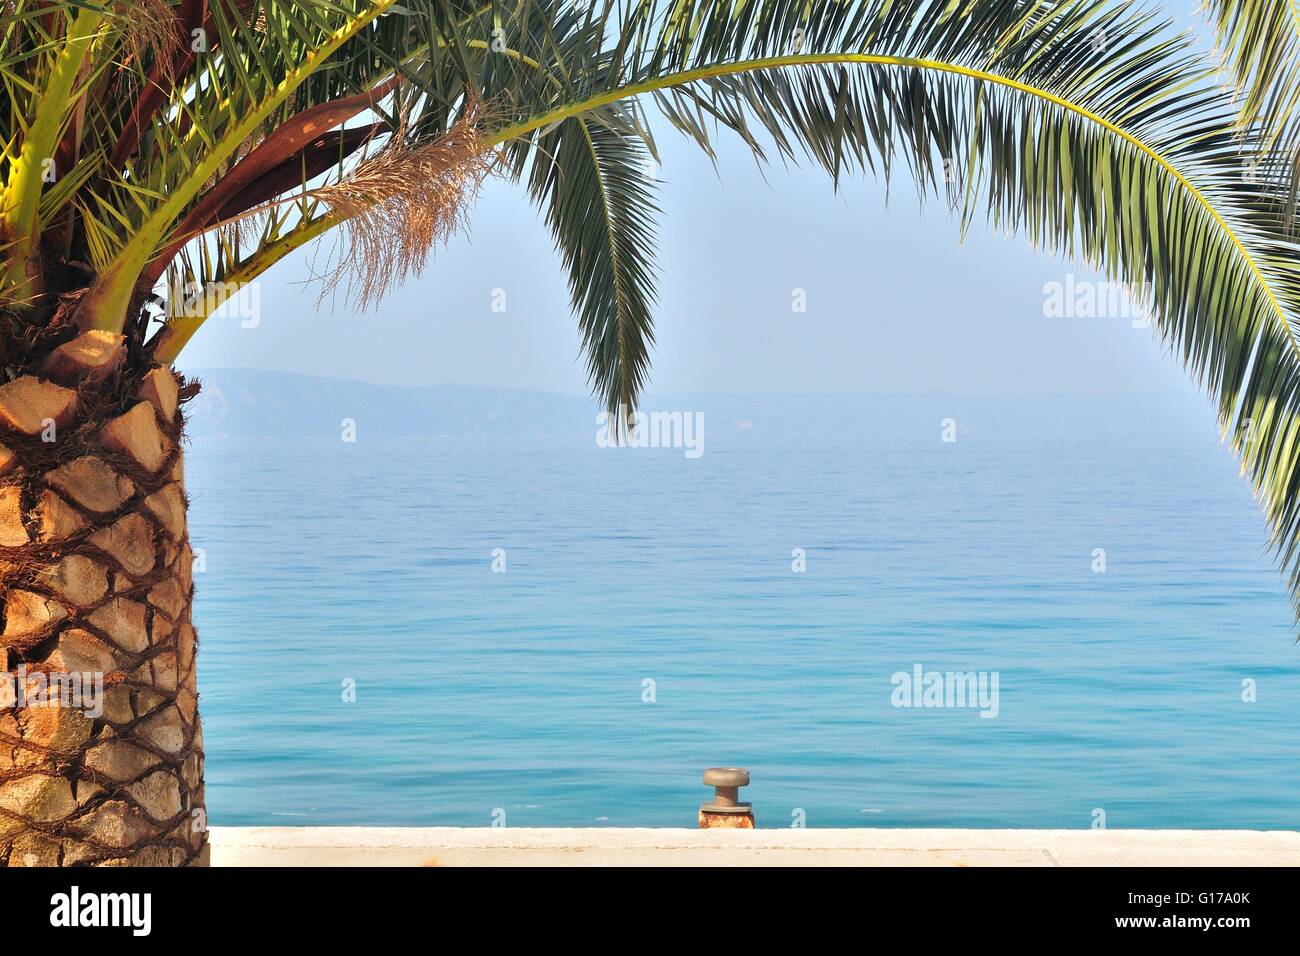 Palm Tree sul lato sinistro dell'immagine con il mare sullo sfondo Foto Stock